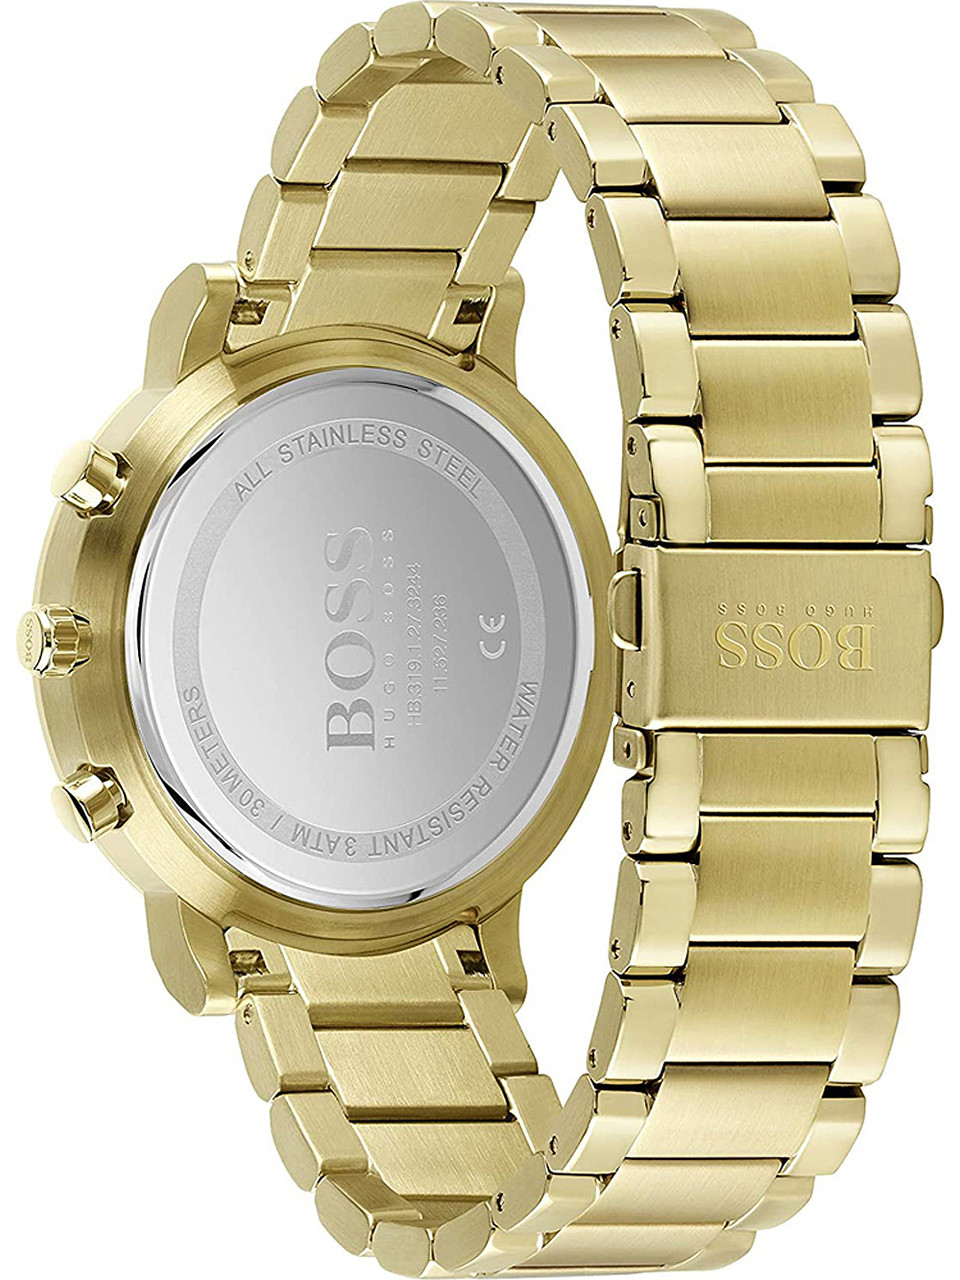 Hugo Boss 1513781 3ATM owlica - Watches chrono Genuine | Integrity 43mm